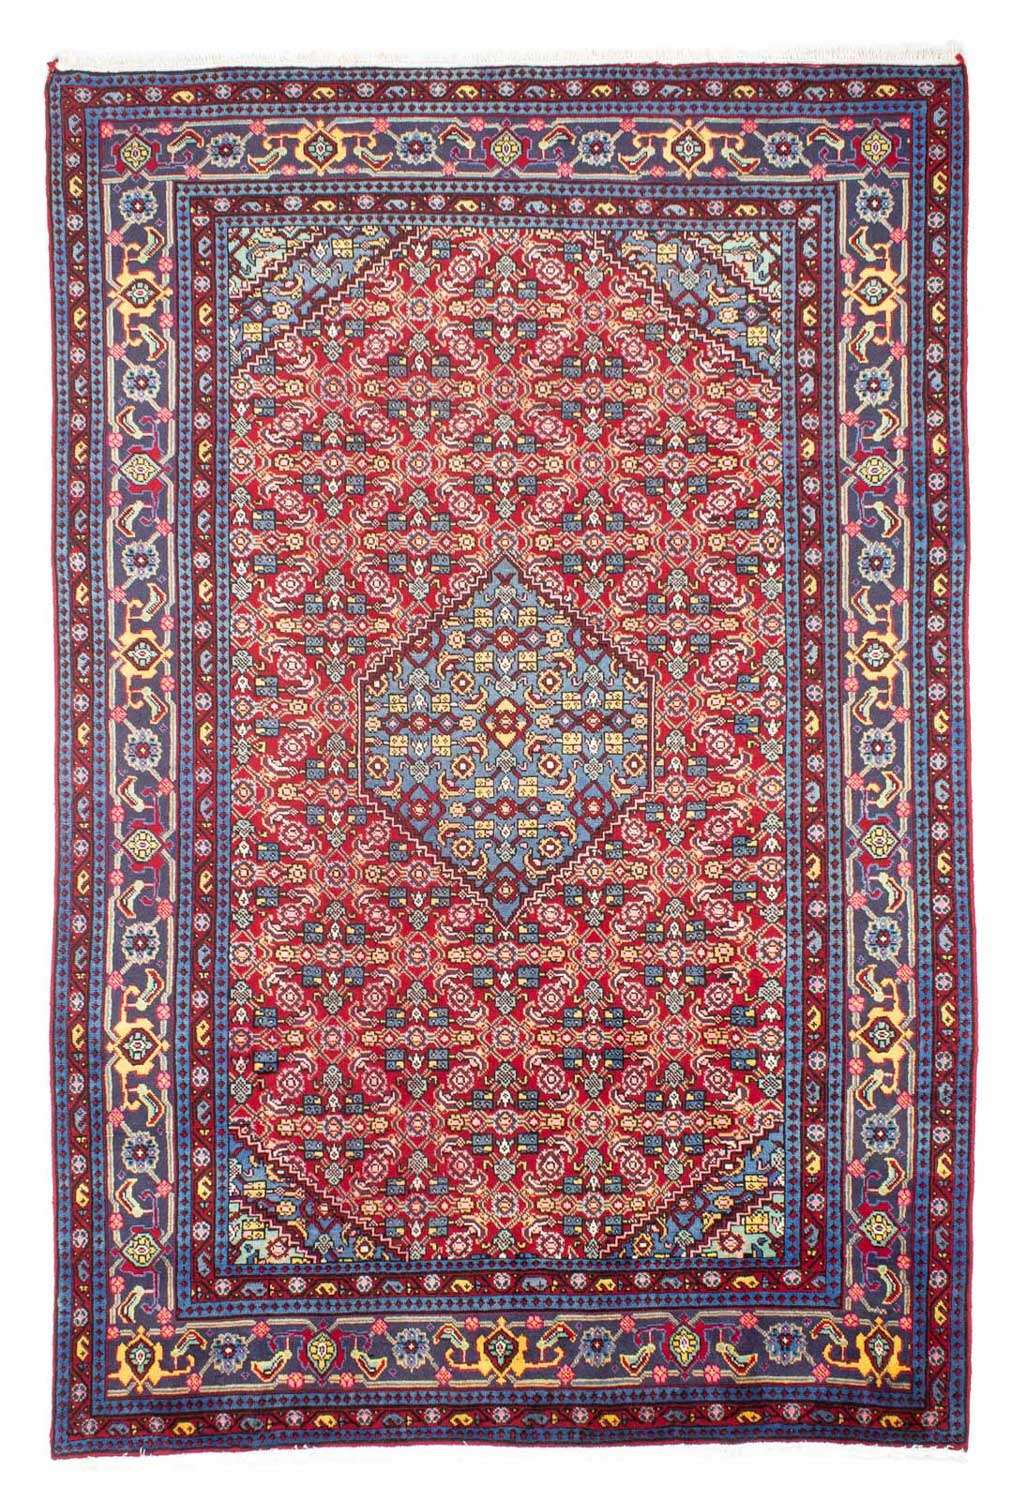 Alfombra persa - Nómada - 292 x 190 cm - rojo